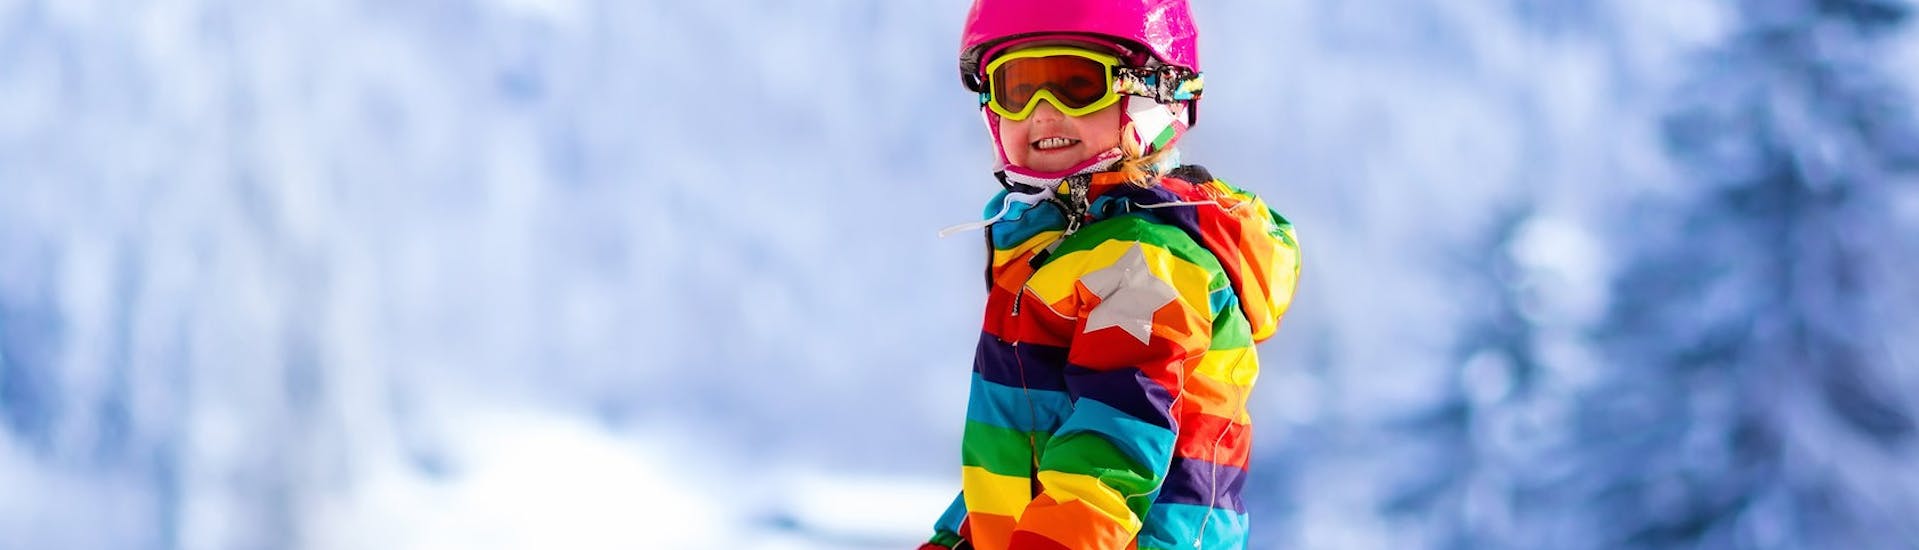 Clases de esquí para niños a partir de 6 años para principiantes.